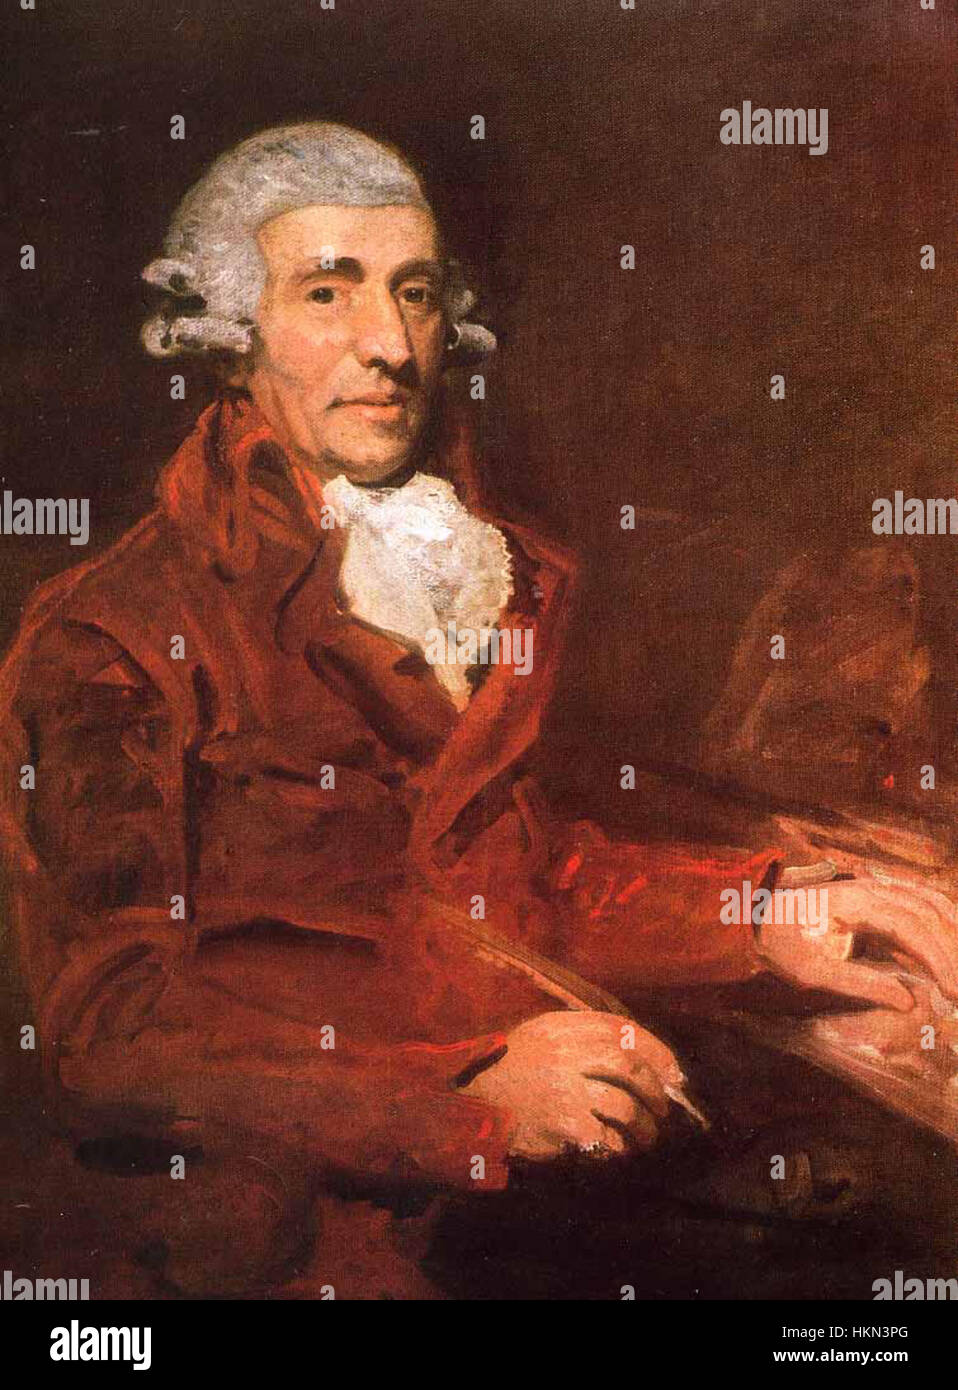 Franz Joseph Haydn 1732-1809 by John Hoppner 1791 Stock Photo